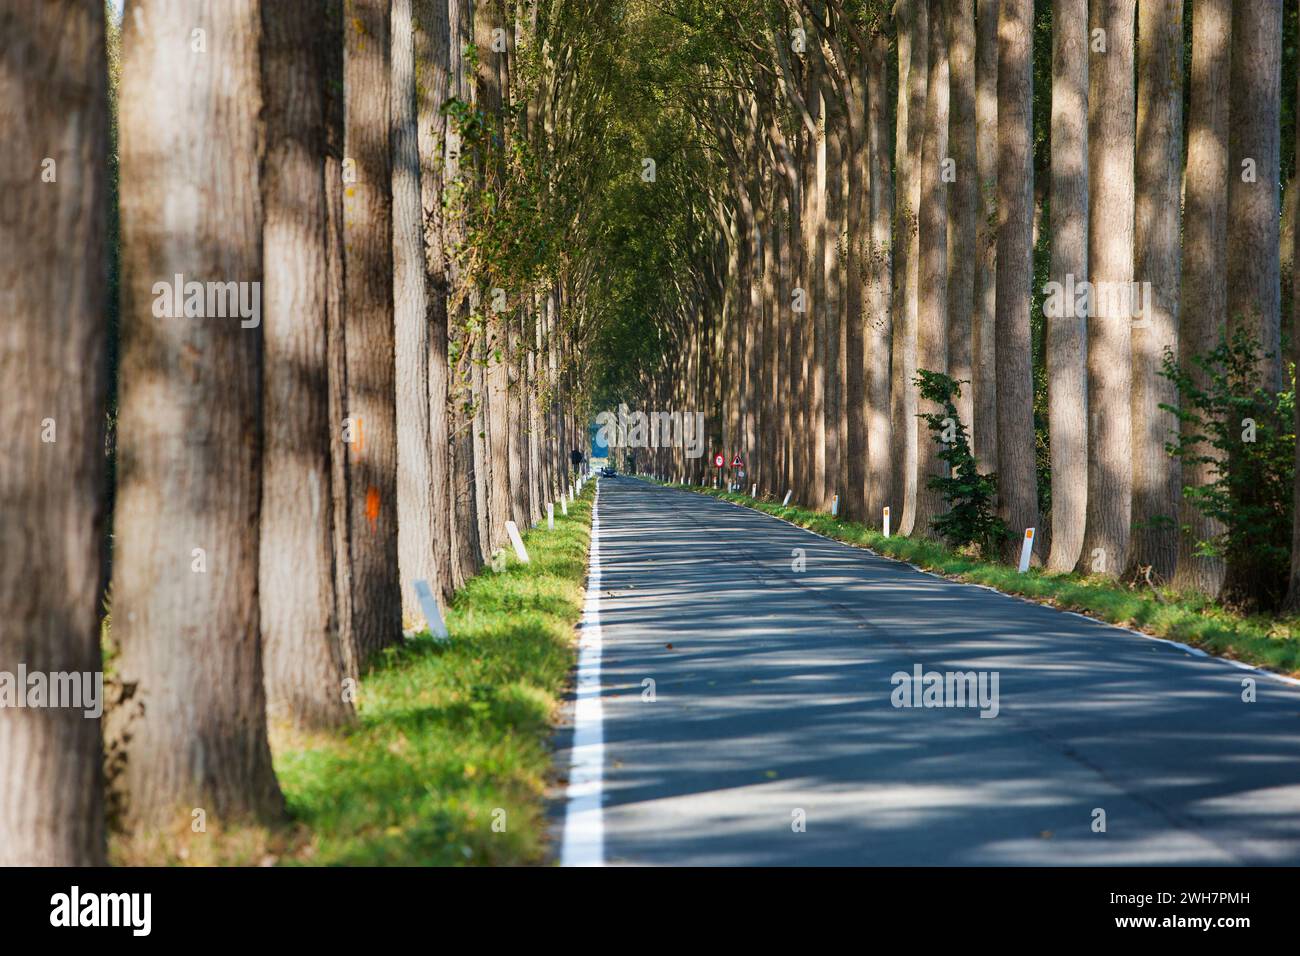 Avenue bordée d'arbres, canal de Schipdonk, Schipdonkvaart, Damme, Flandre, Belgique, Europe Banque D'Images